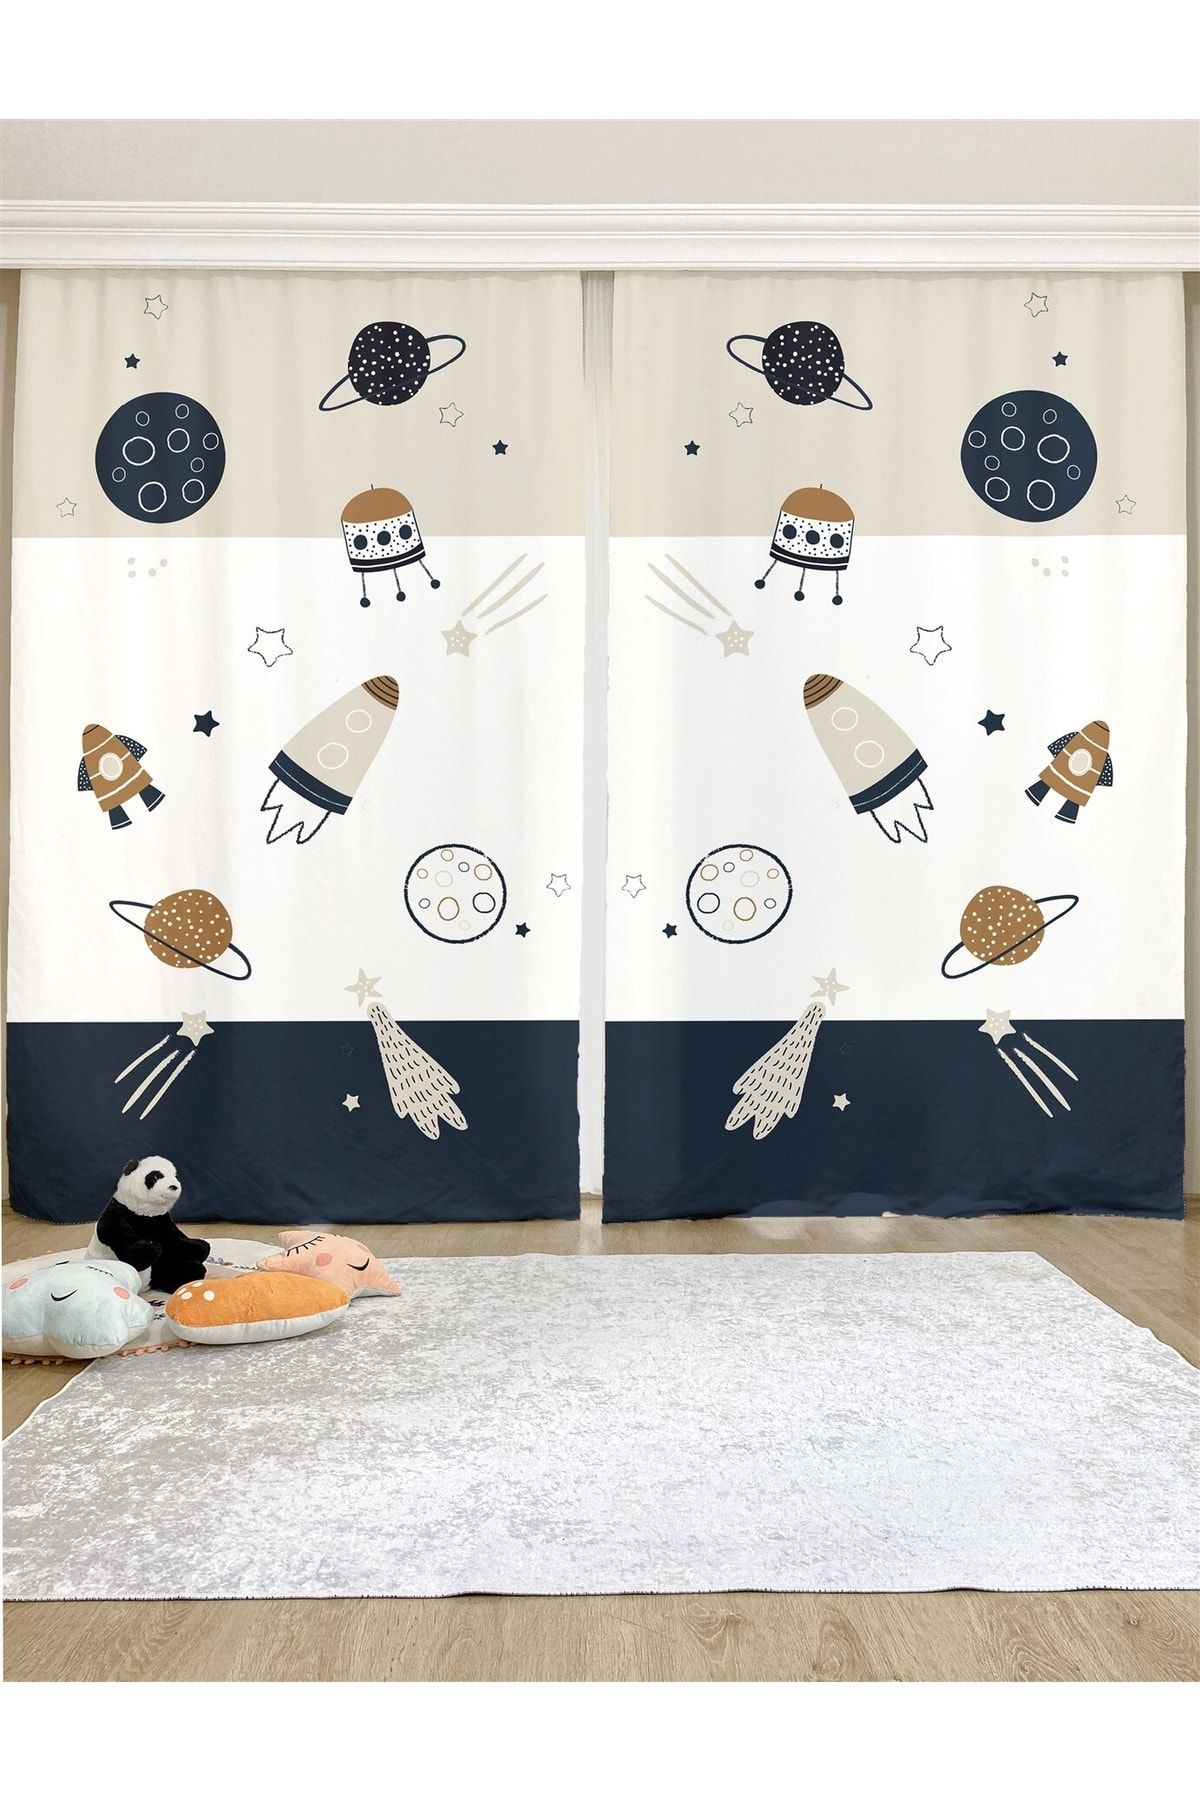 Evpanya Uzay Araçları Desenli Çocuk & Bebek Odası Fon Perde (TEK KANAT FİYATLANDIRMA)